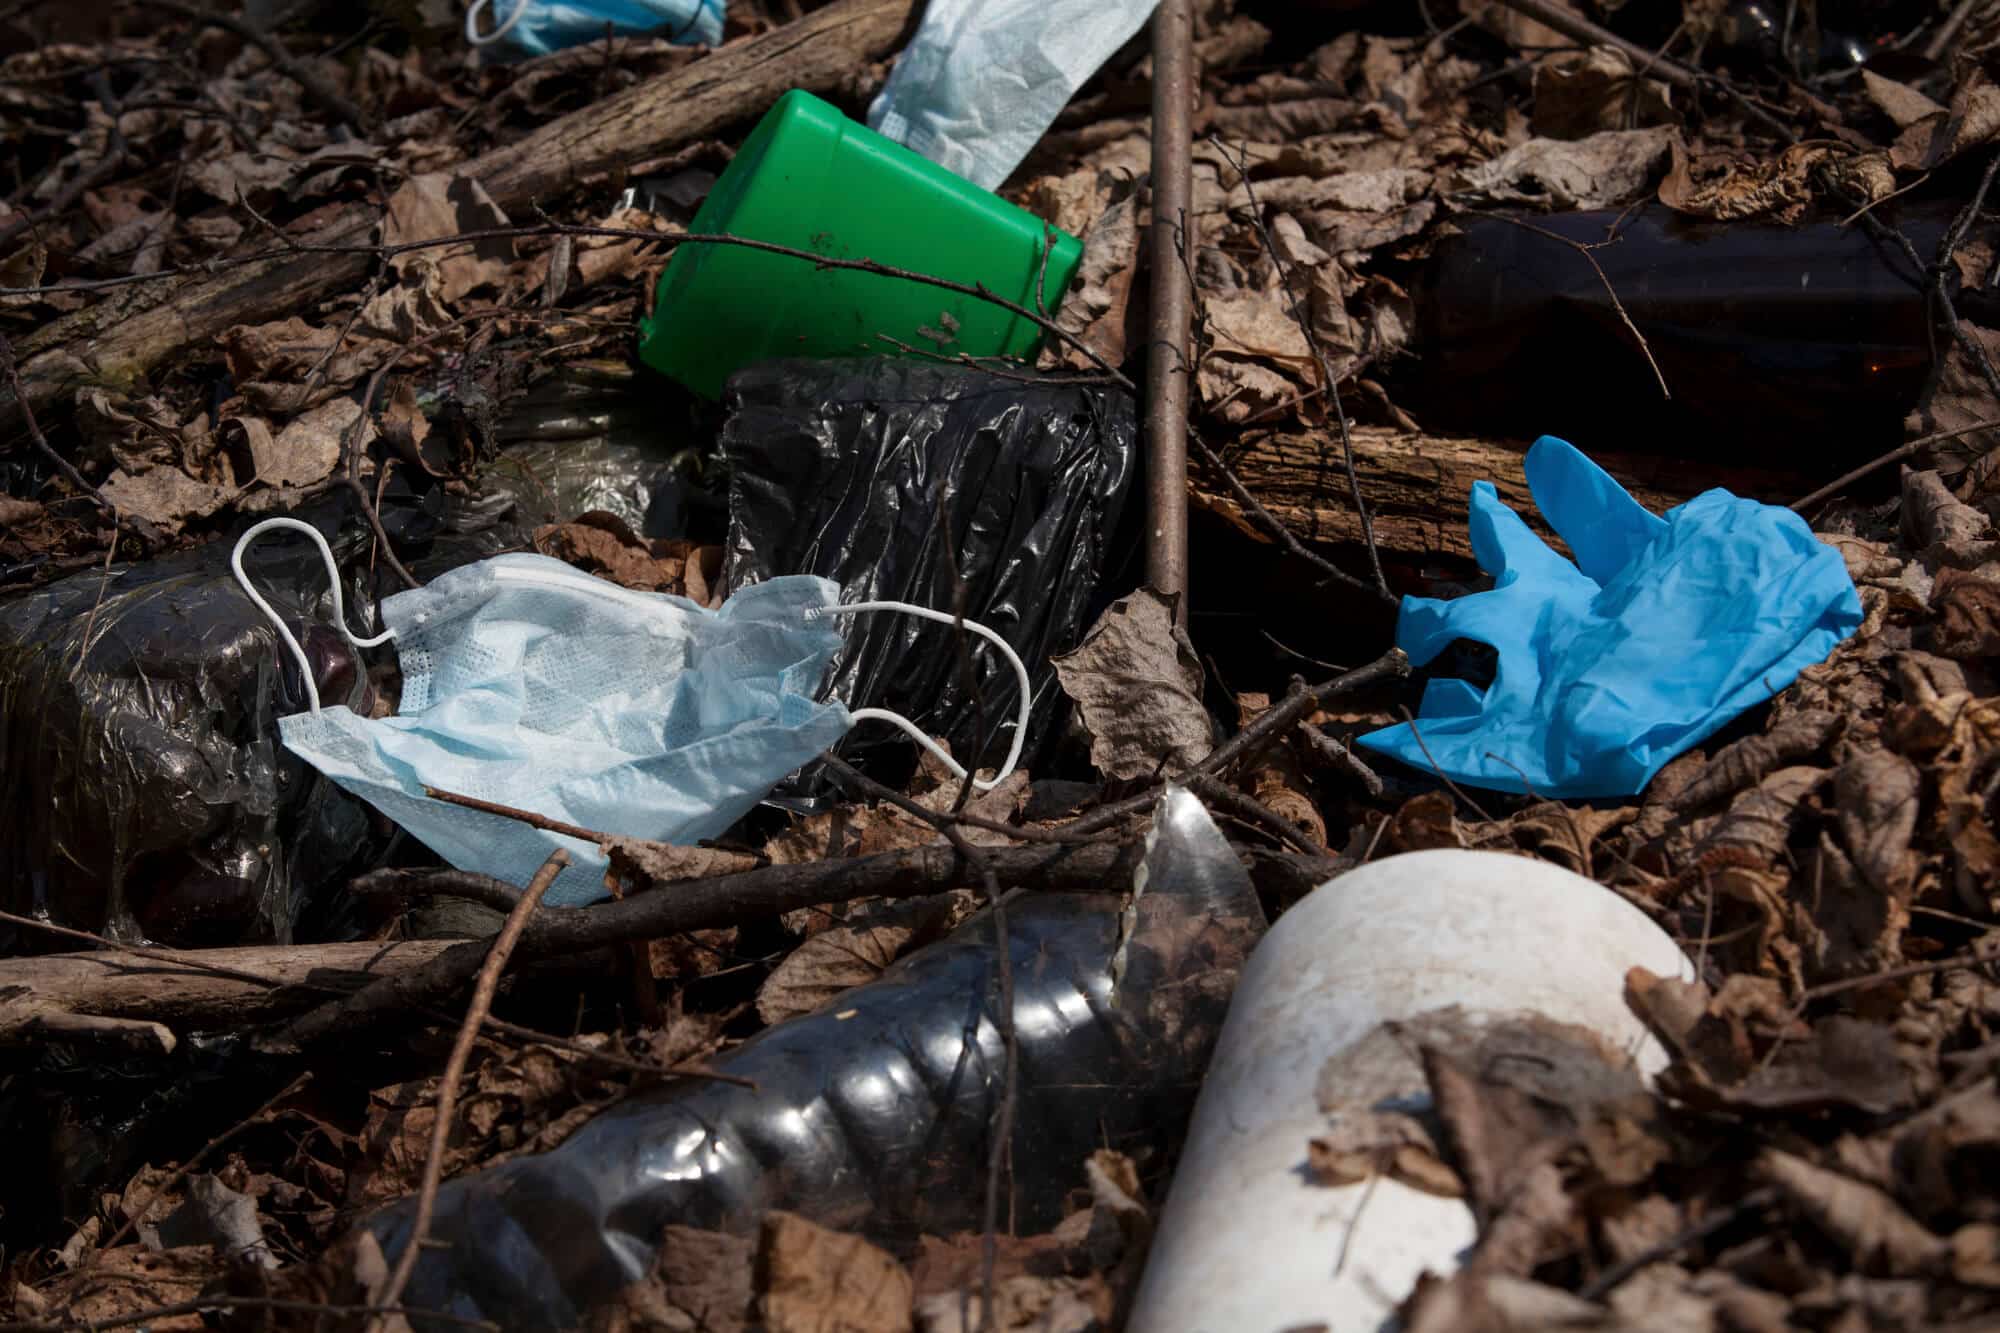 פסולת אריזות פלסטיק. משמשות פעם אחת, מזהמות אלפי שנים. <a href="https://depositphotos.com. ">איור: depositphotos.com</a>